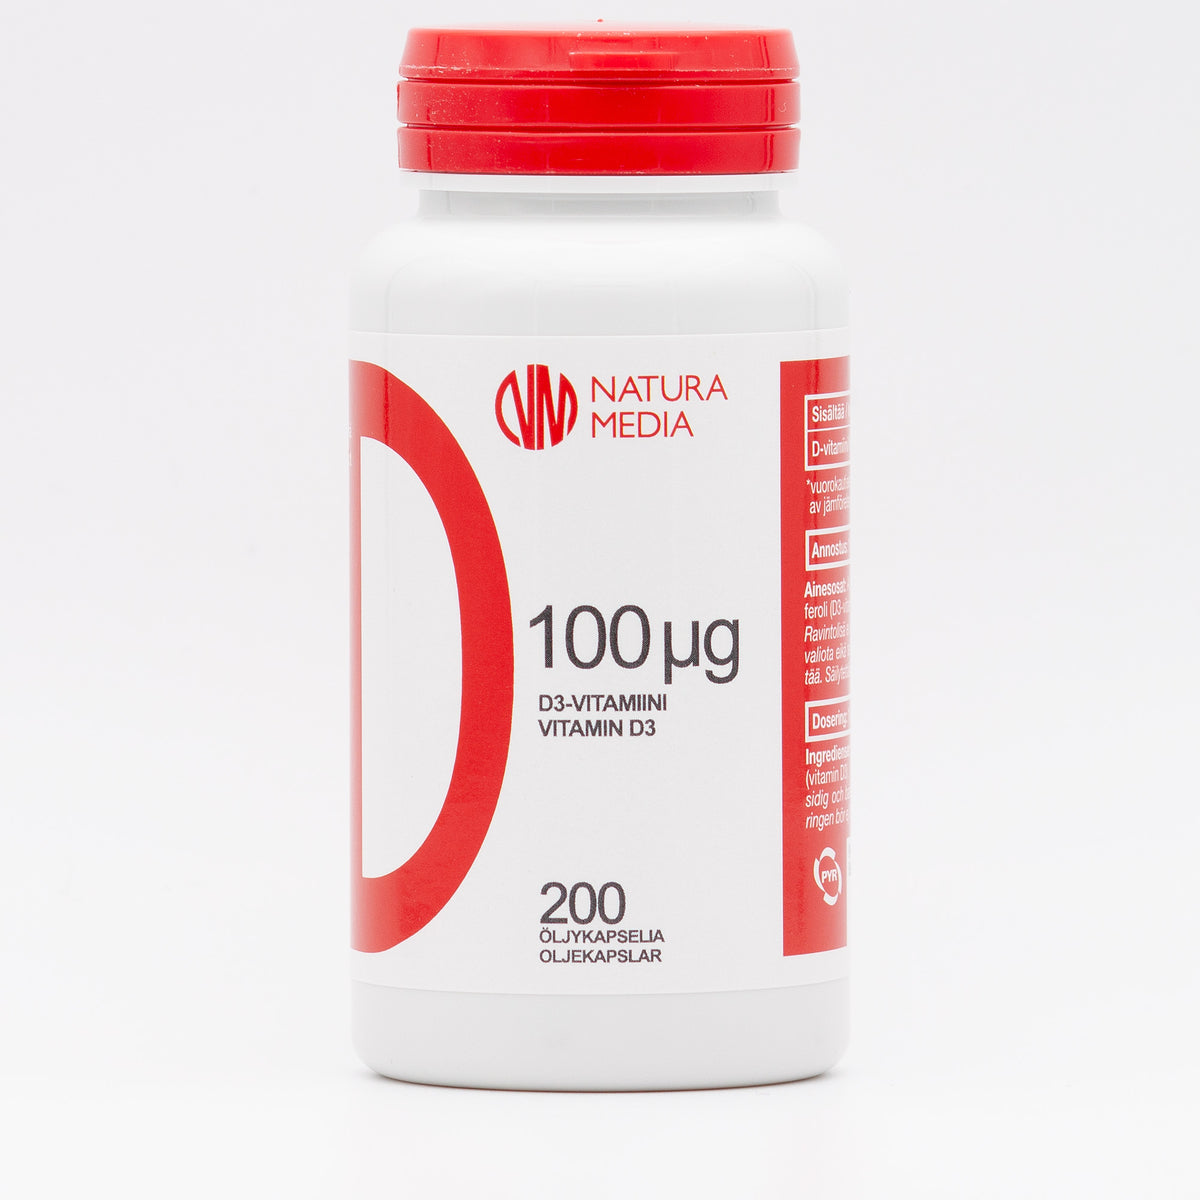 Natura Media D3-vitamiini 100 µg 200 kaps.